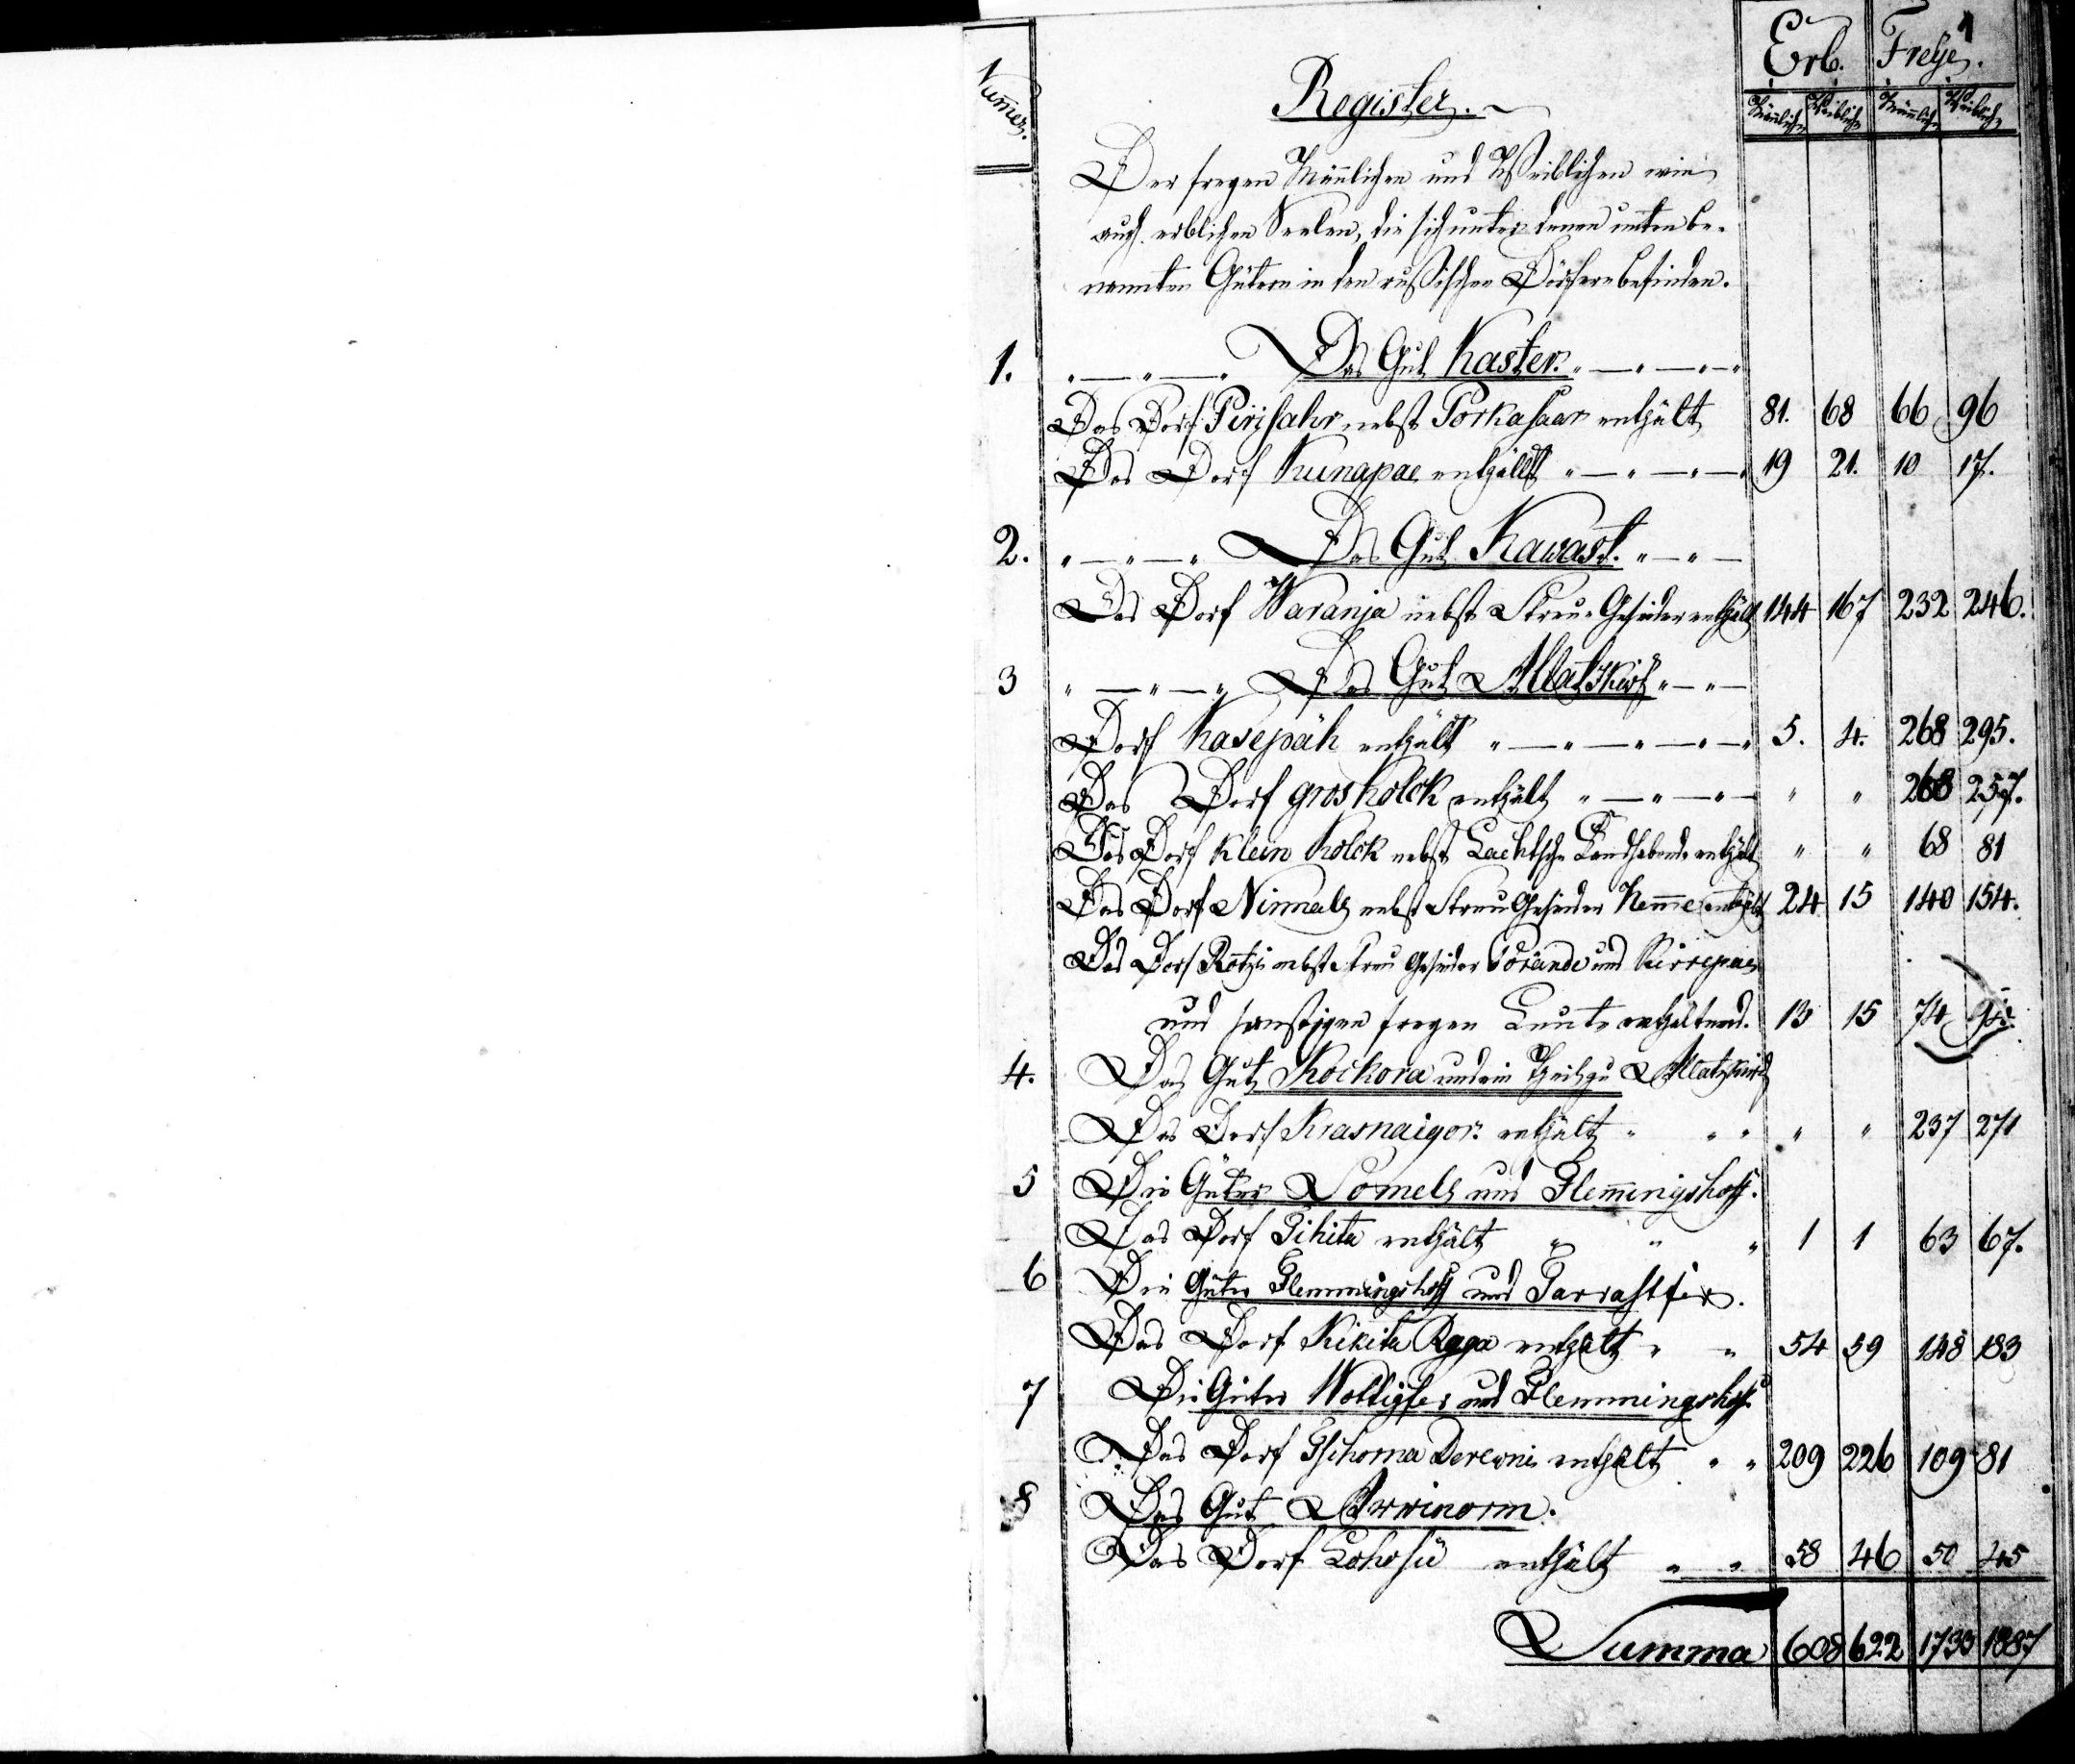 Tartu Sillakohuse 1819. aasta peipsivenelaste külade nimekiri.